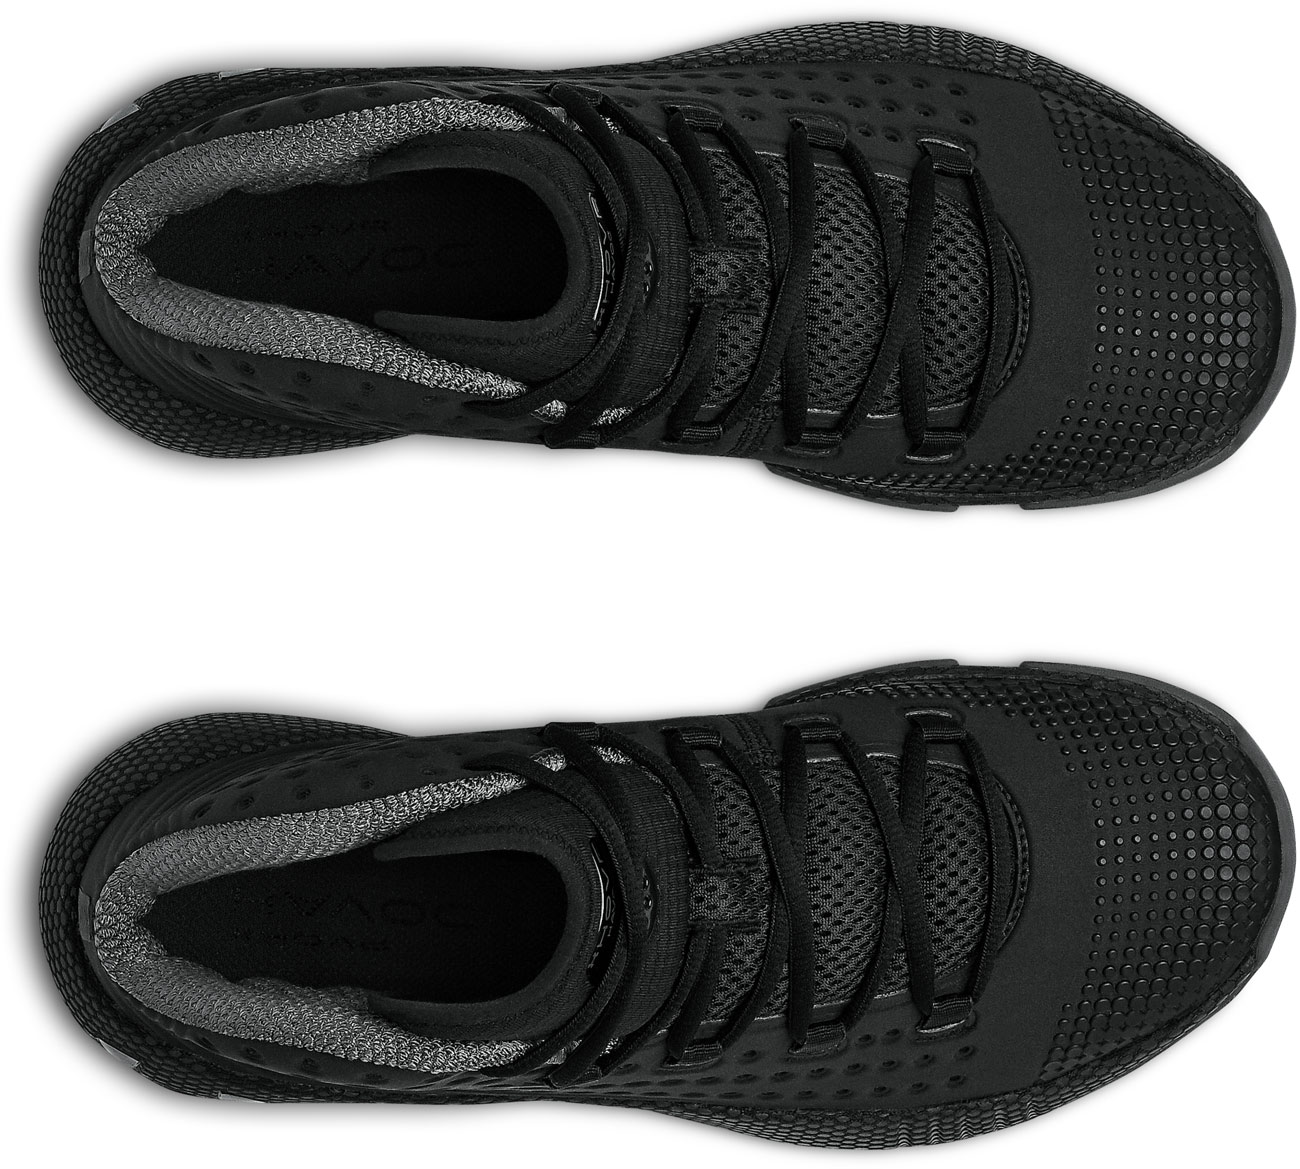 Pánska basketbalová obuv